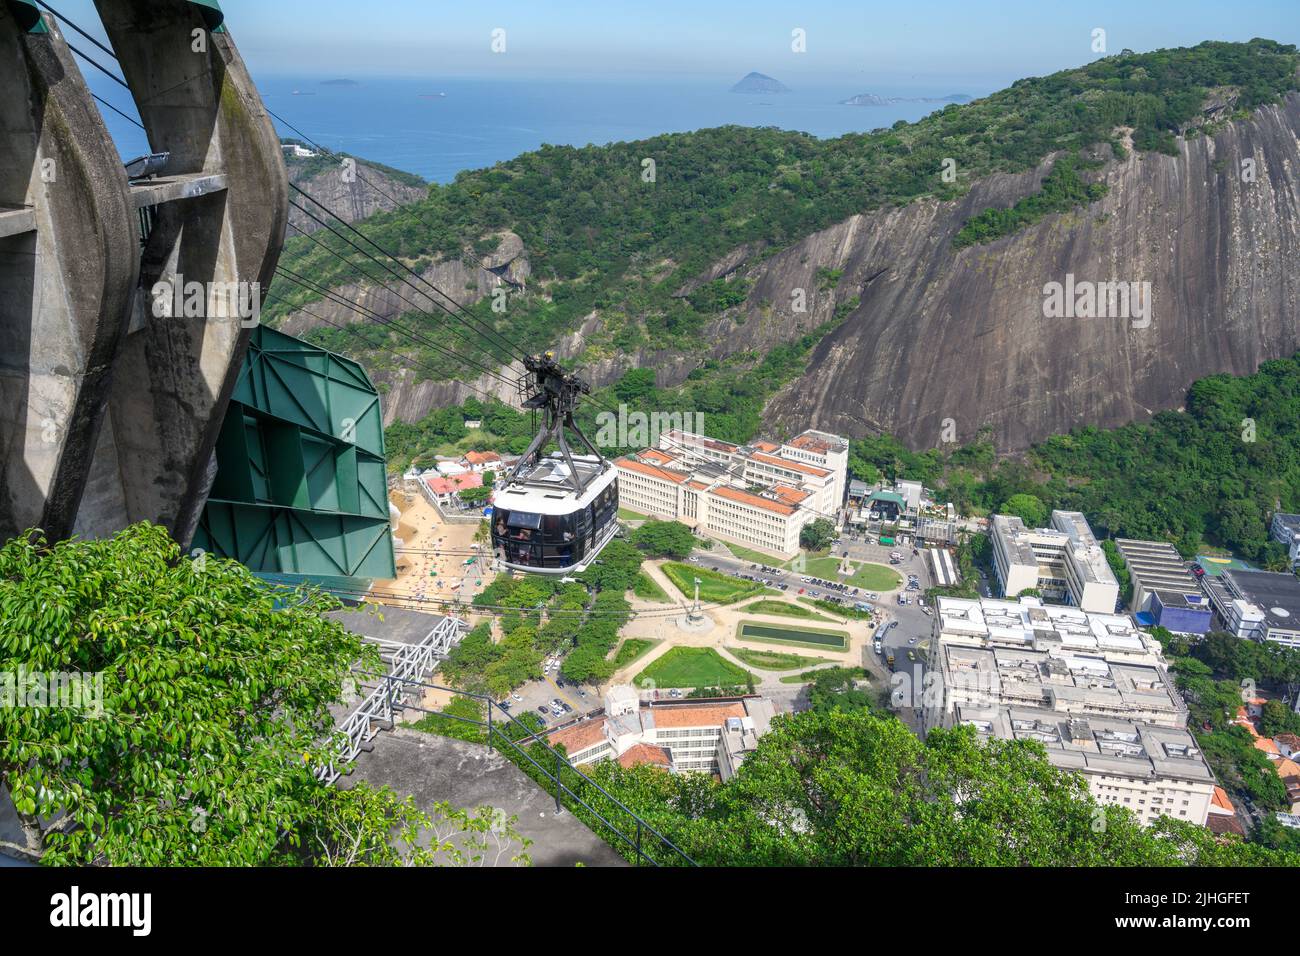 Stazione centrale della funivia del Pan di zucchero, guardando indietro lungo la montagna, Morro da Urca, Pan di zucchero, Rio de Janeiro, Brasile Foto Stock